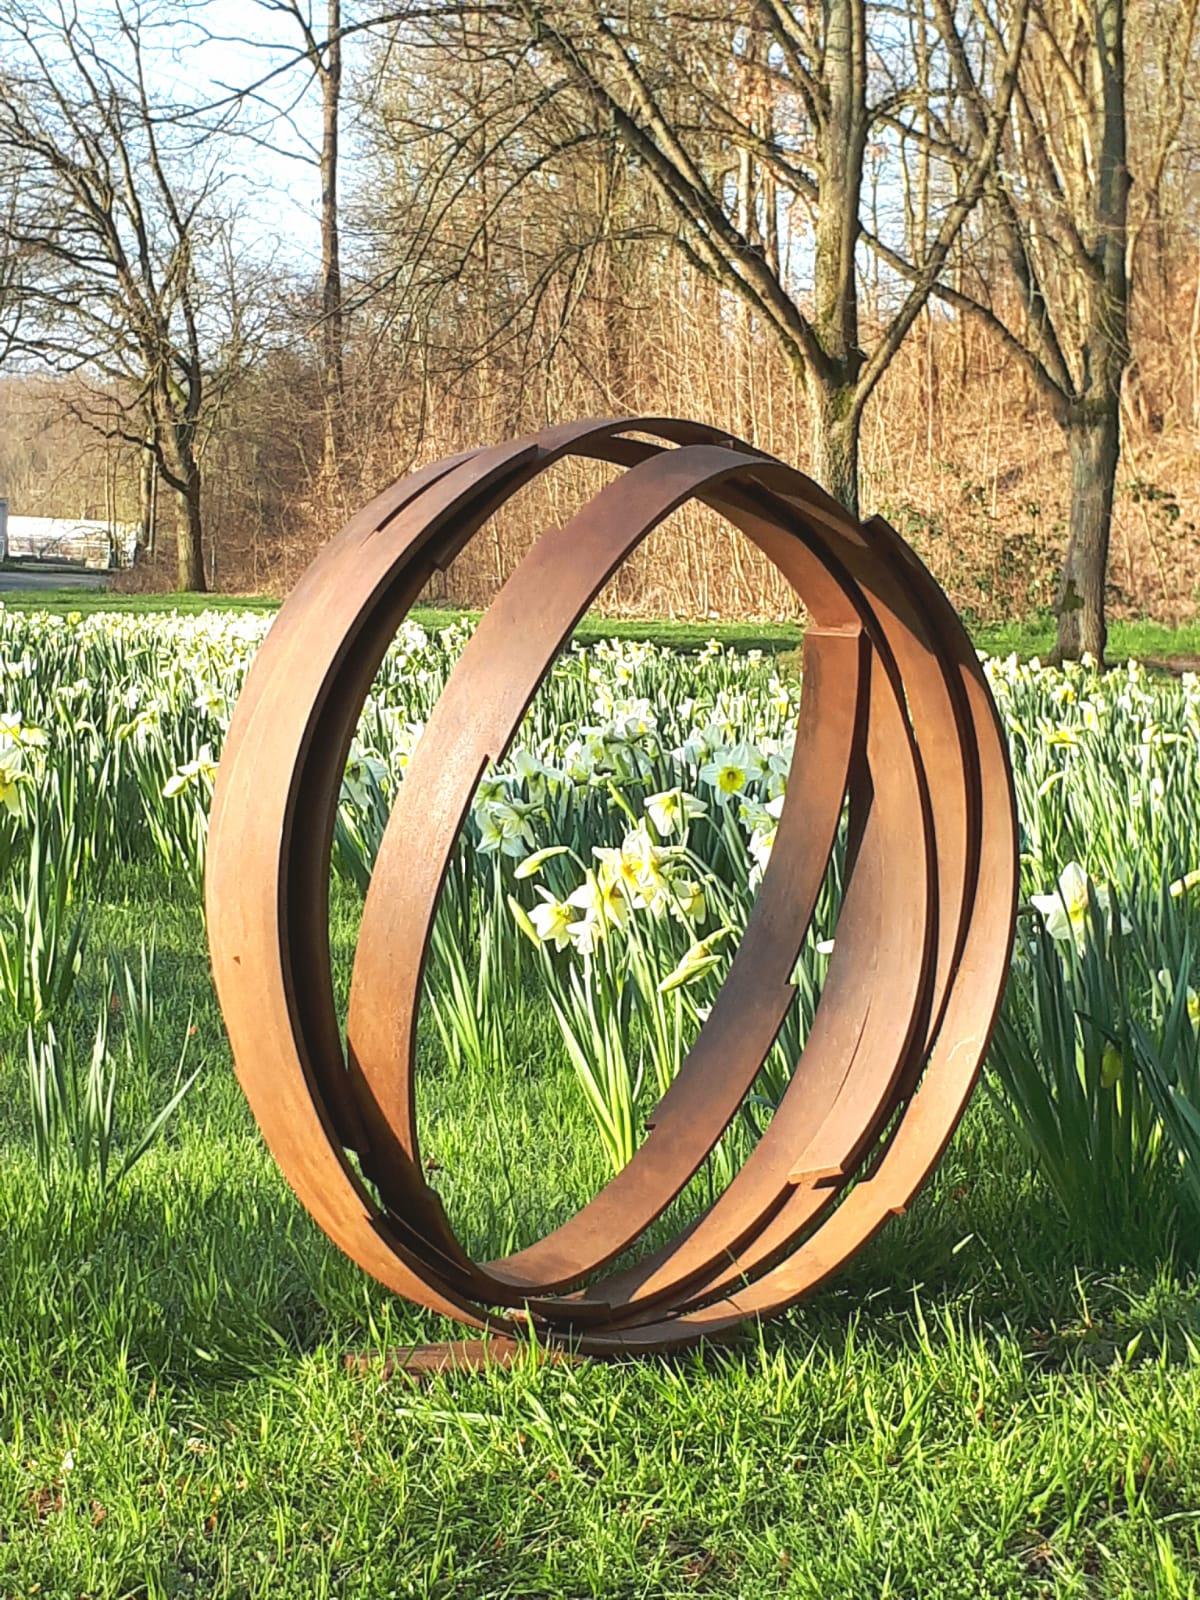 Artistics : Kuno Vollet

Titre : Orbite

Sculpture contemporaine en acier rouillé pour l'intérieur ou les espaces extérieurs du jardin.

Beau cercle - signe de l'infini. Une grande œuvre d'art étonnante. Possibilité de mettre sur un piédestal ou